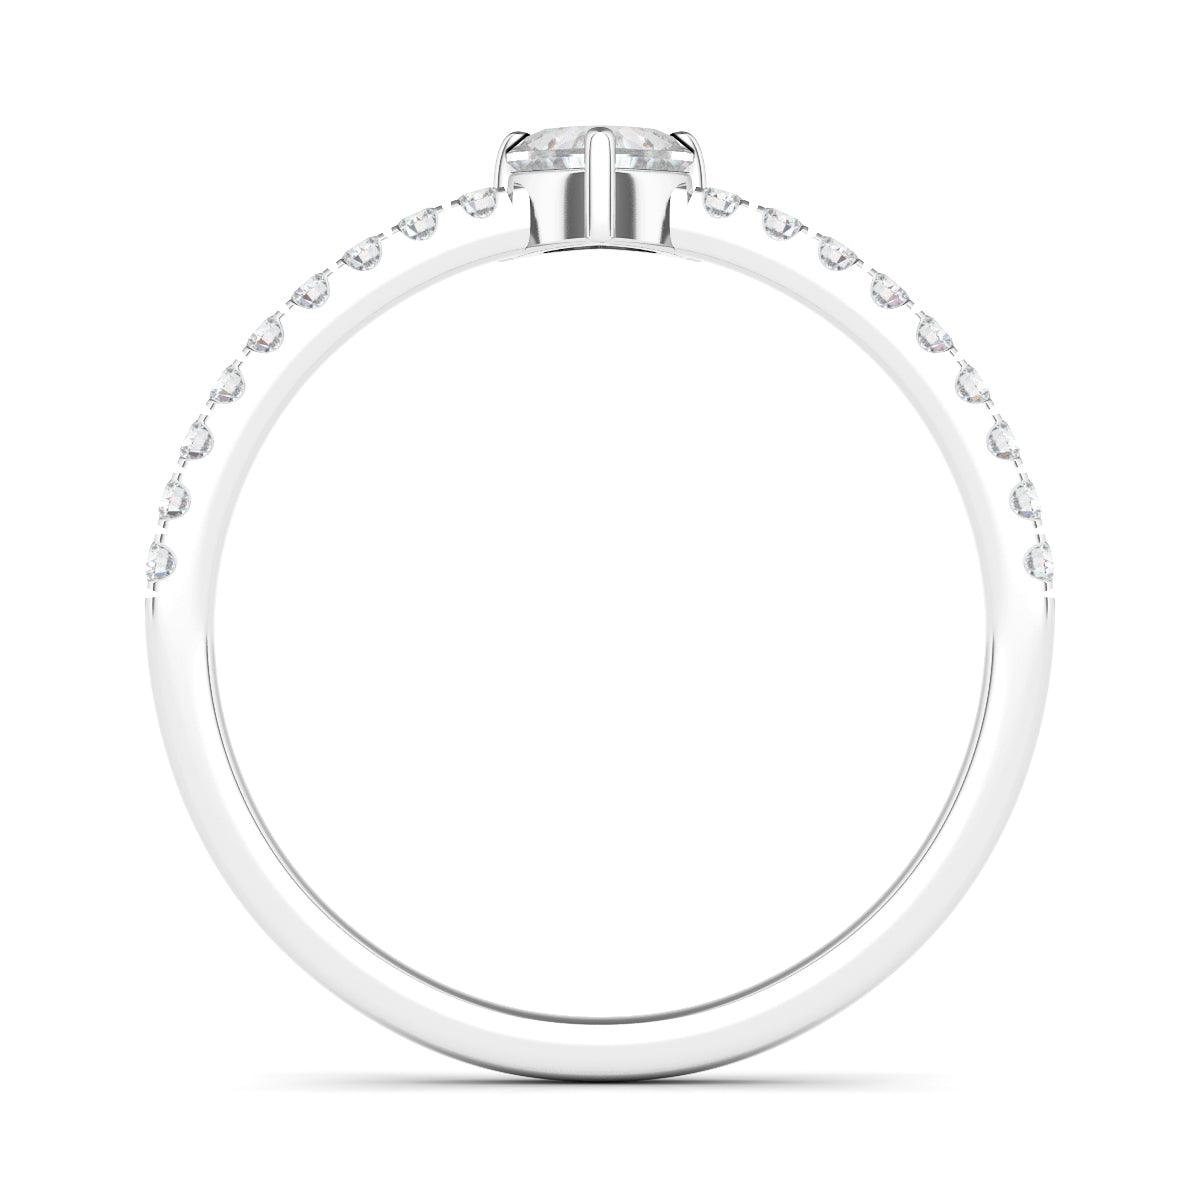 Heart & Pave Diamond Ring - HauteCarat